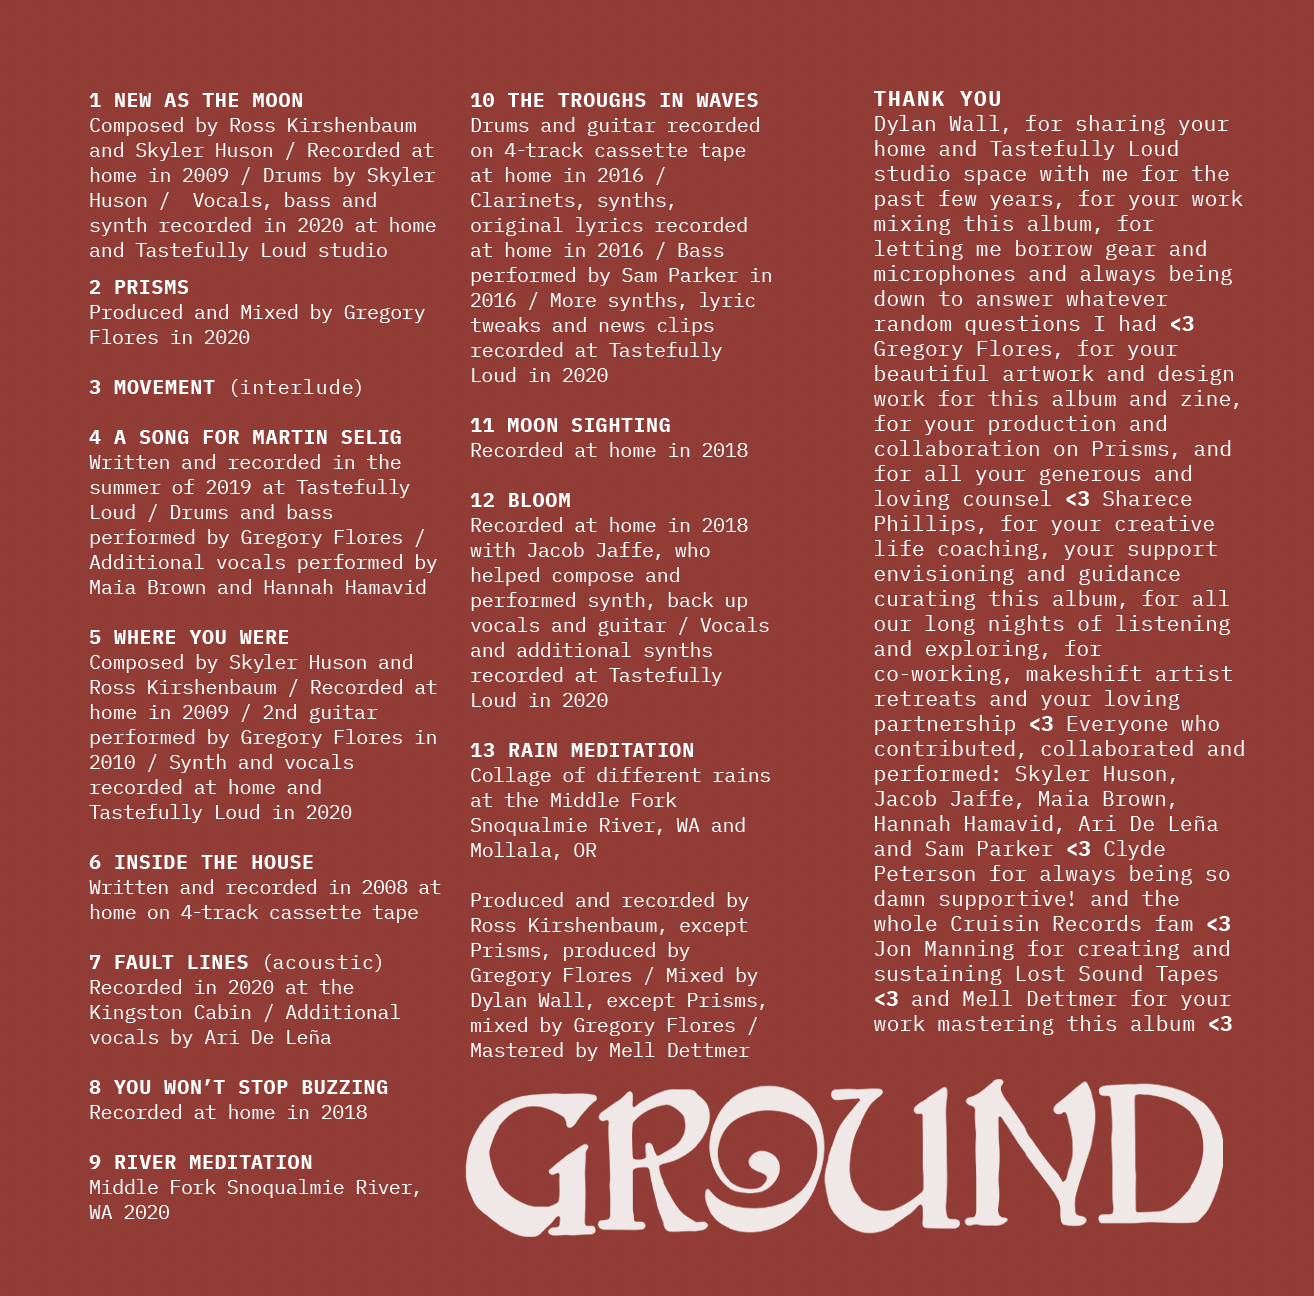 LEVONEH "Ground" cassette tape